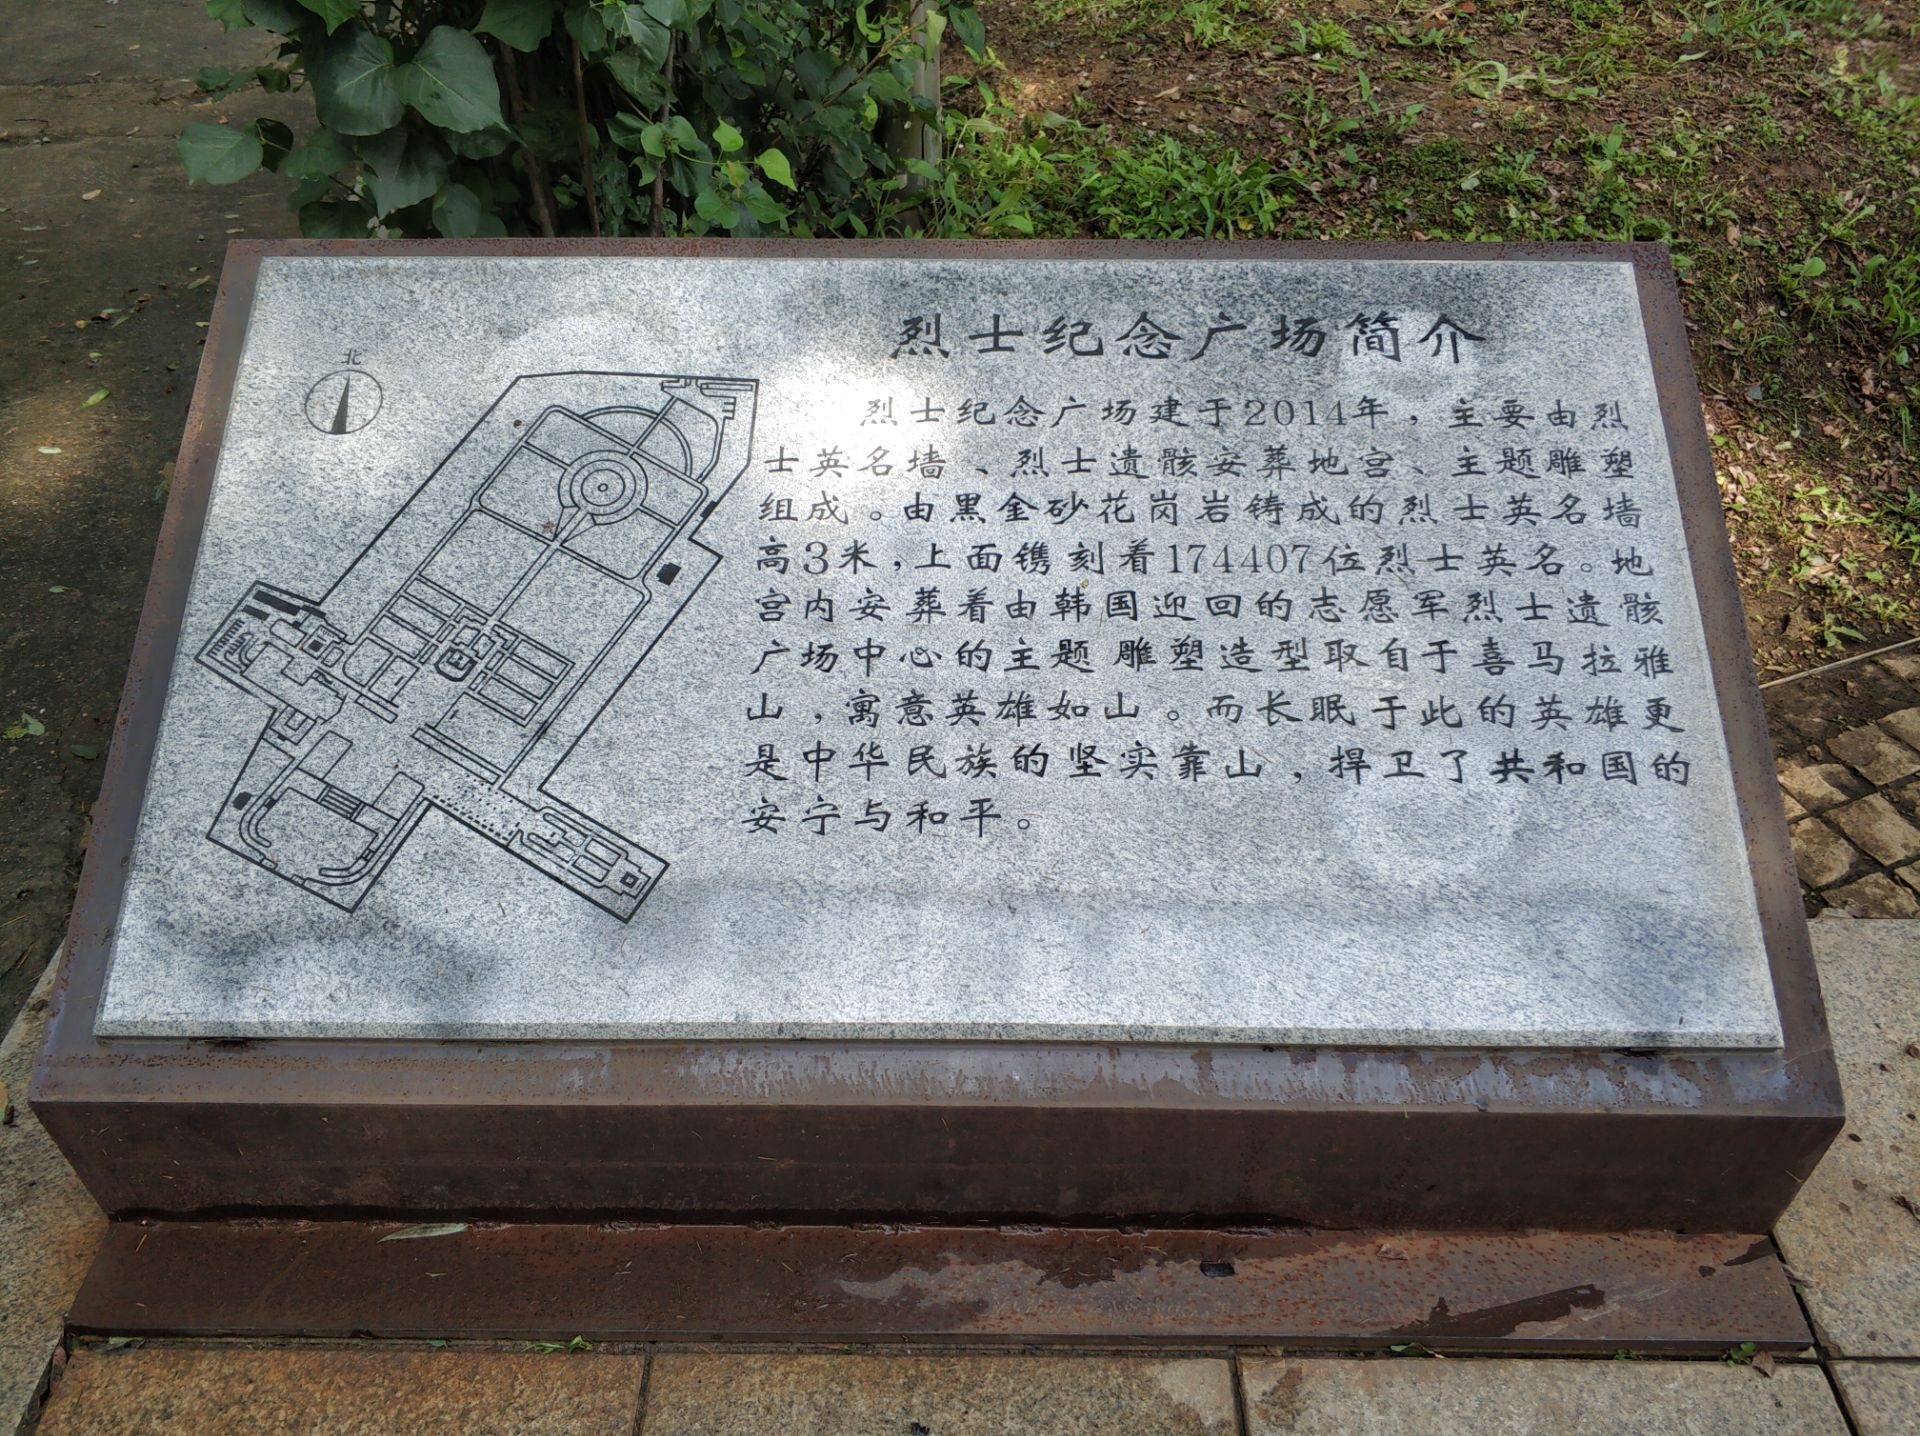 沈阳皇姑区的抗美援朝烈士陵园一个庄严的地方东面连着苏军烈士陵园出